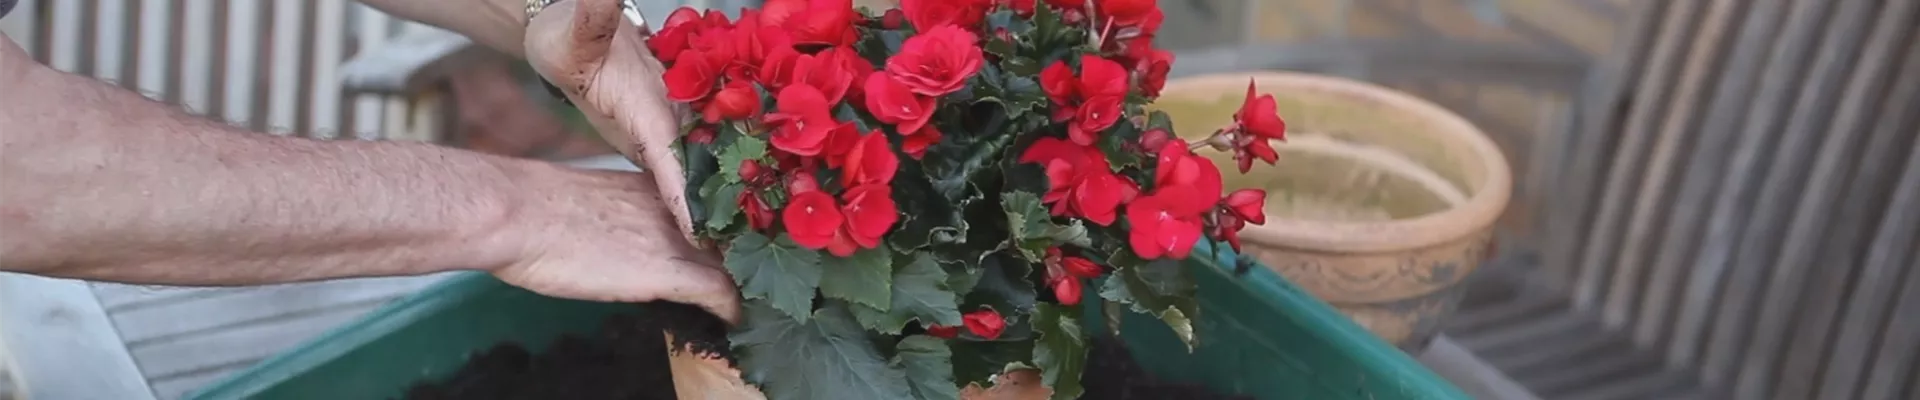 Blumenkübel - Bepflanzen mit Sommerblumen (thumbnail).jpg